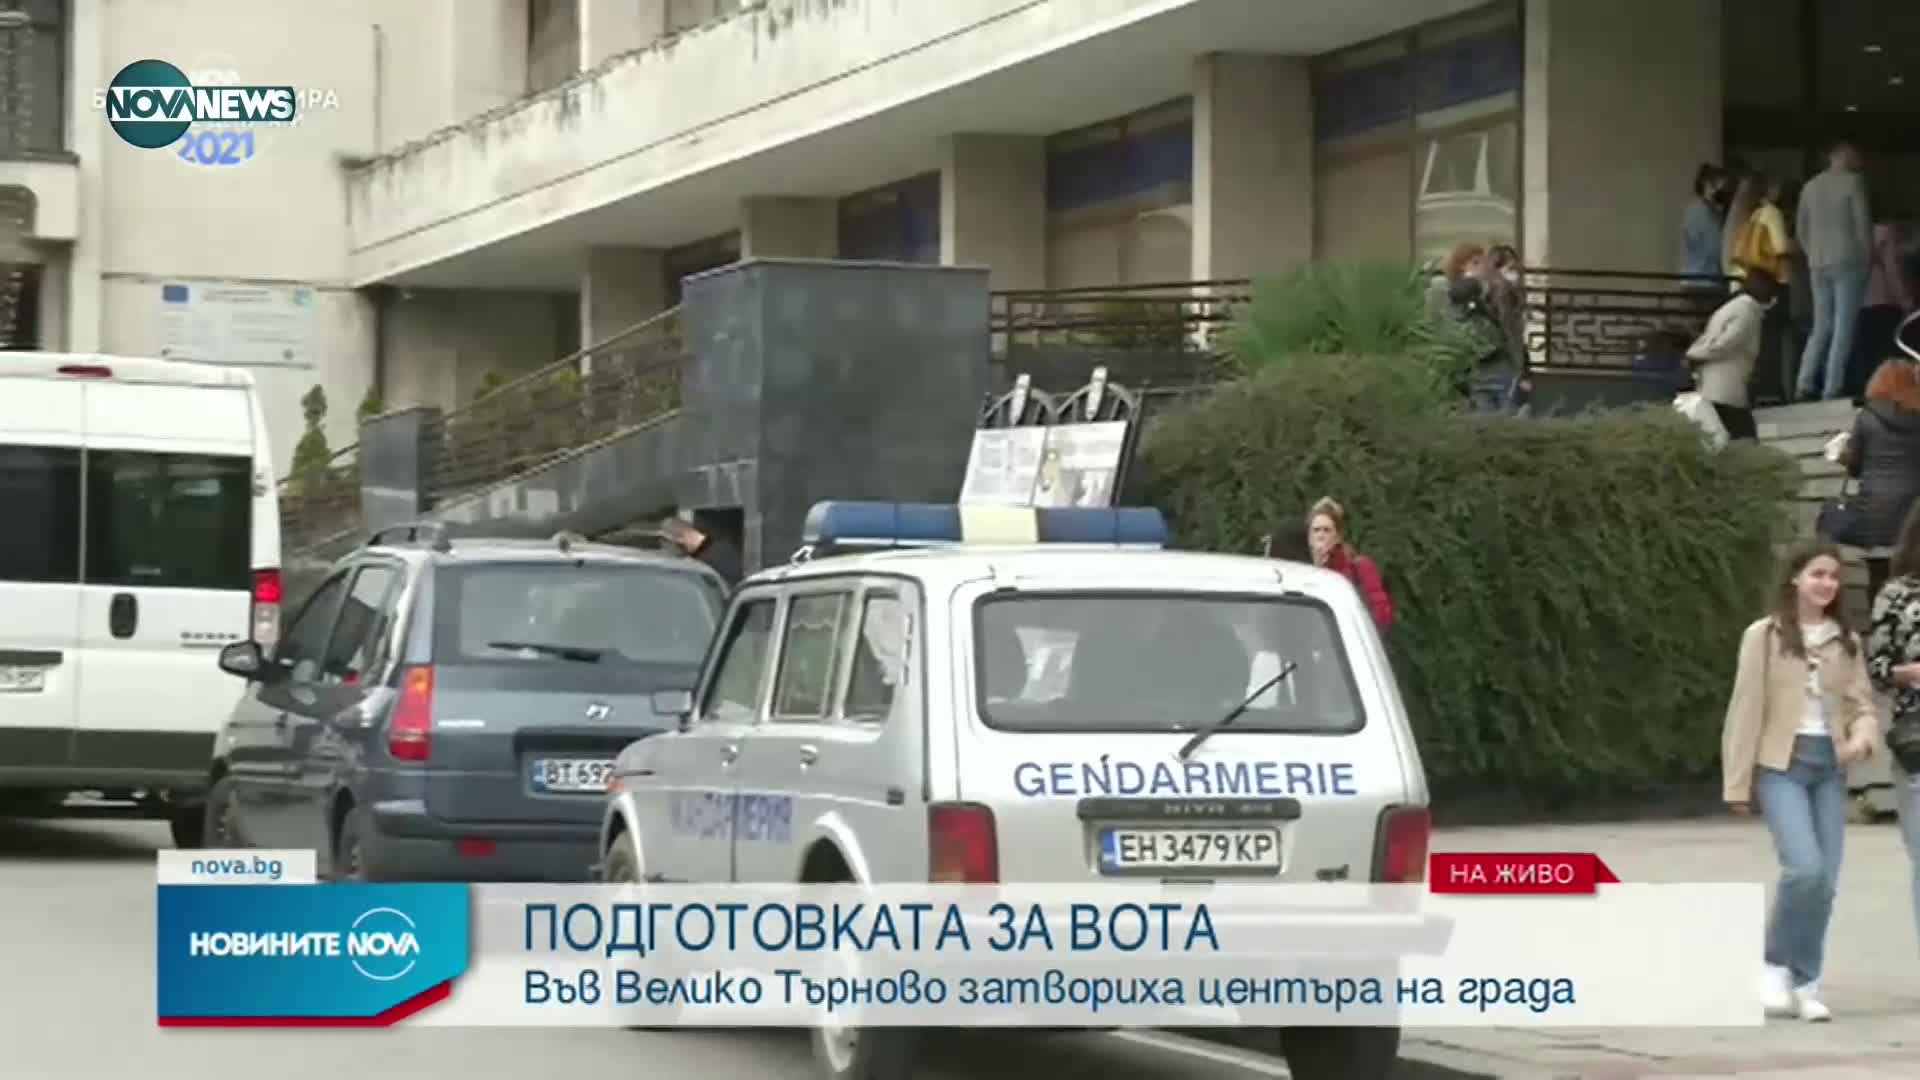 Центърът на Велико Търново е затворен заради подготовката на вота